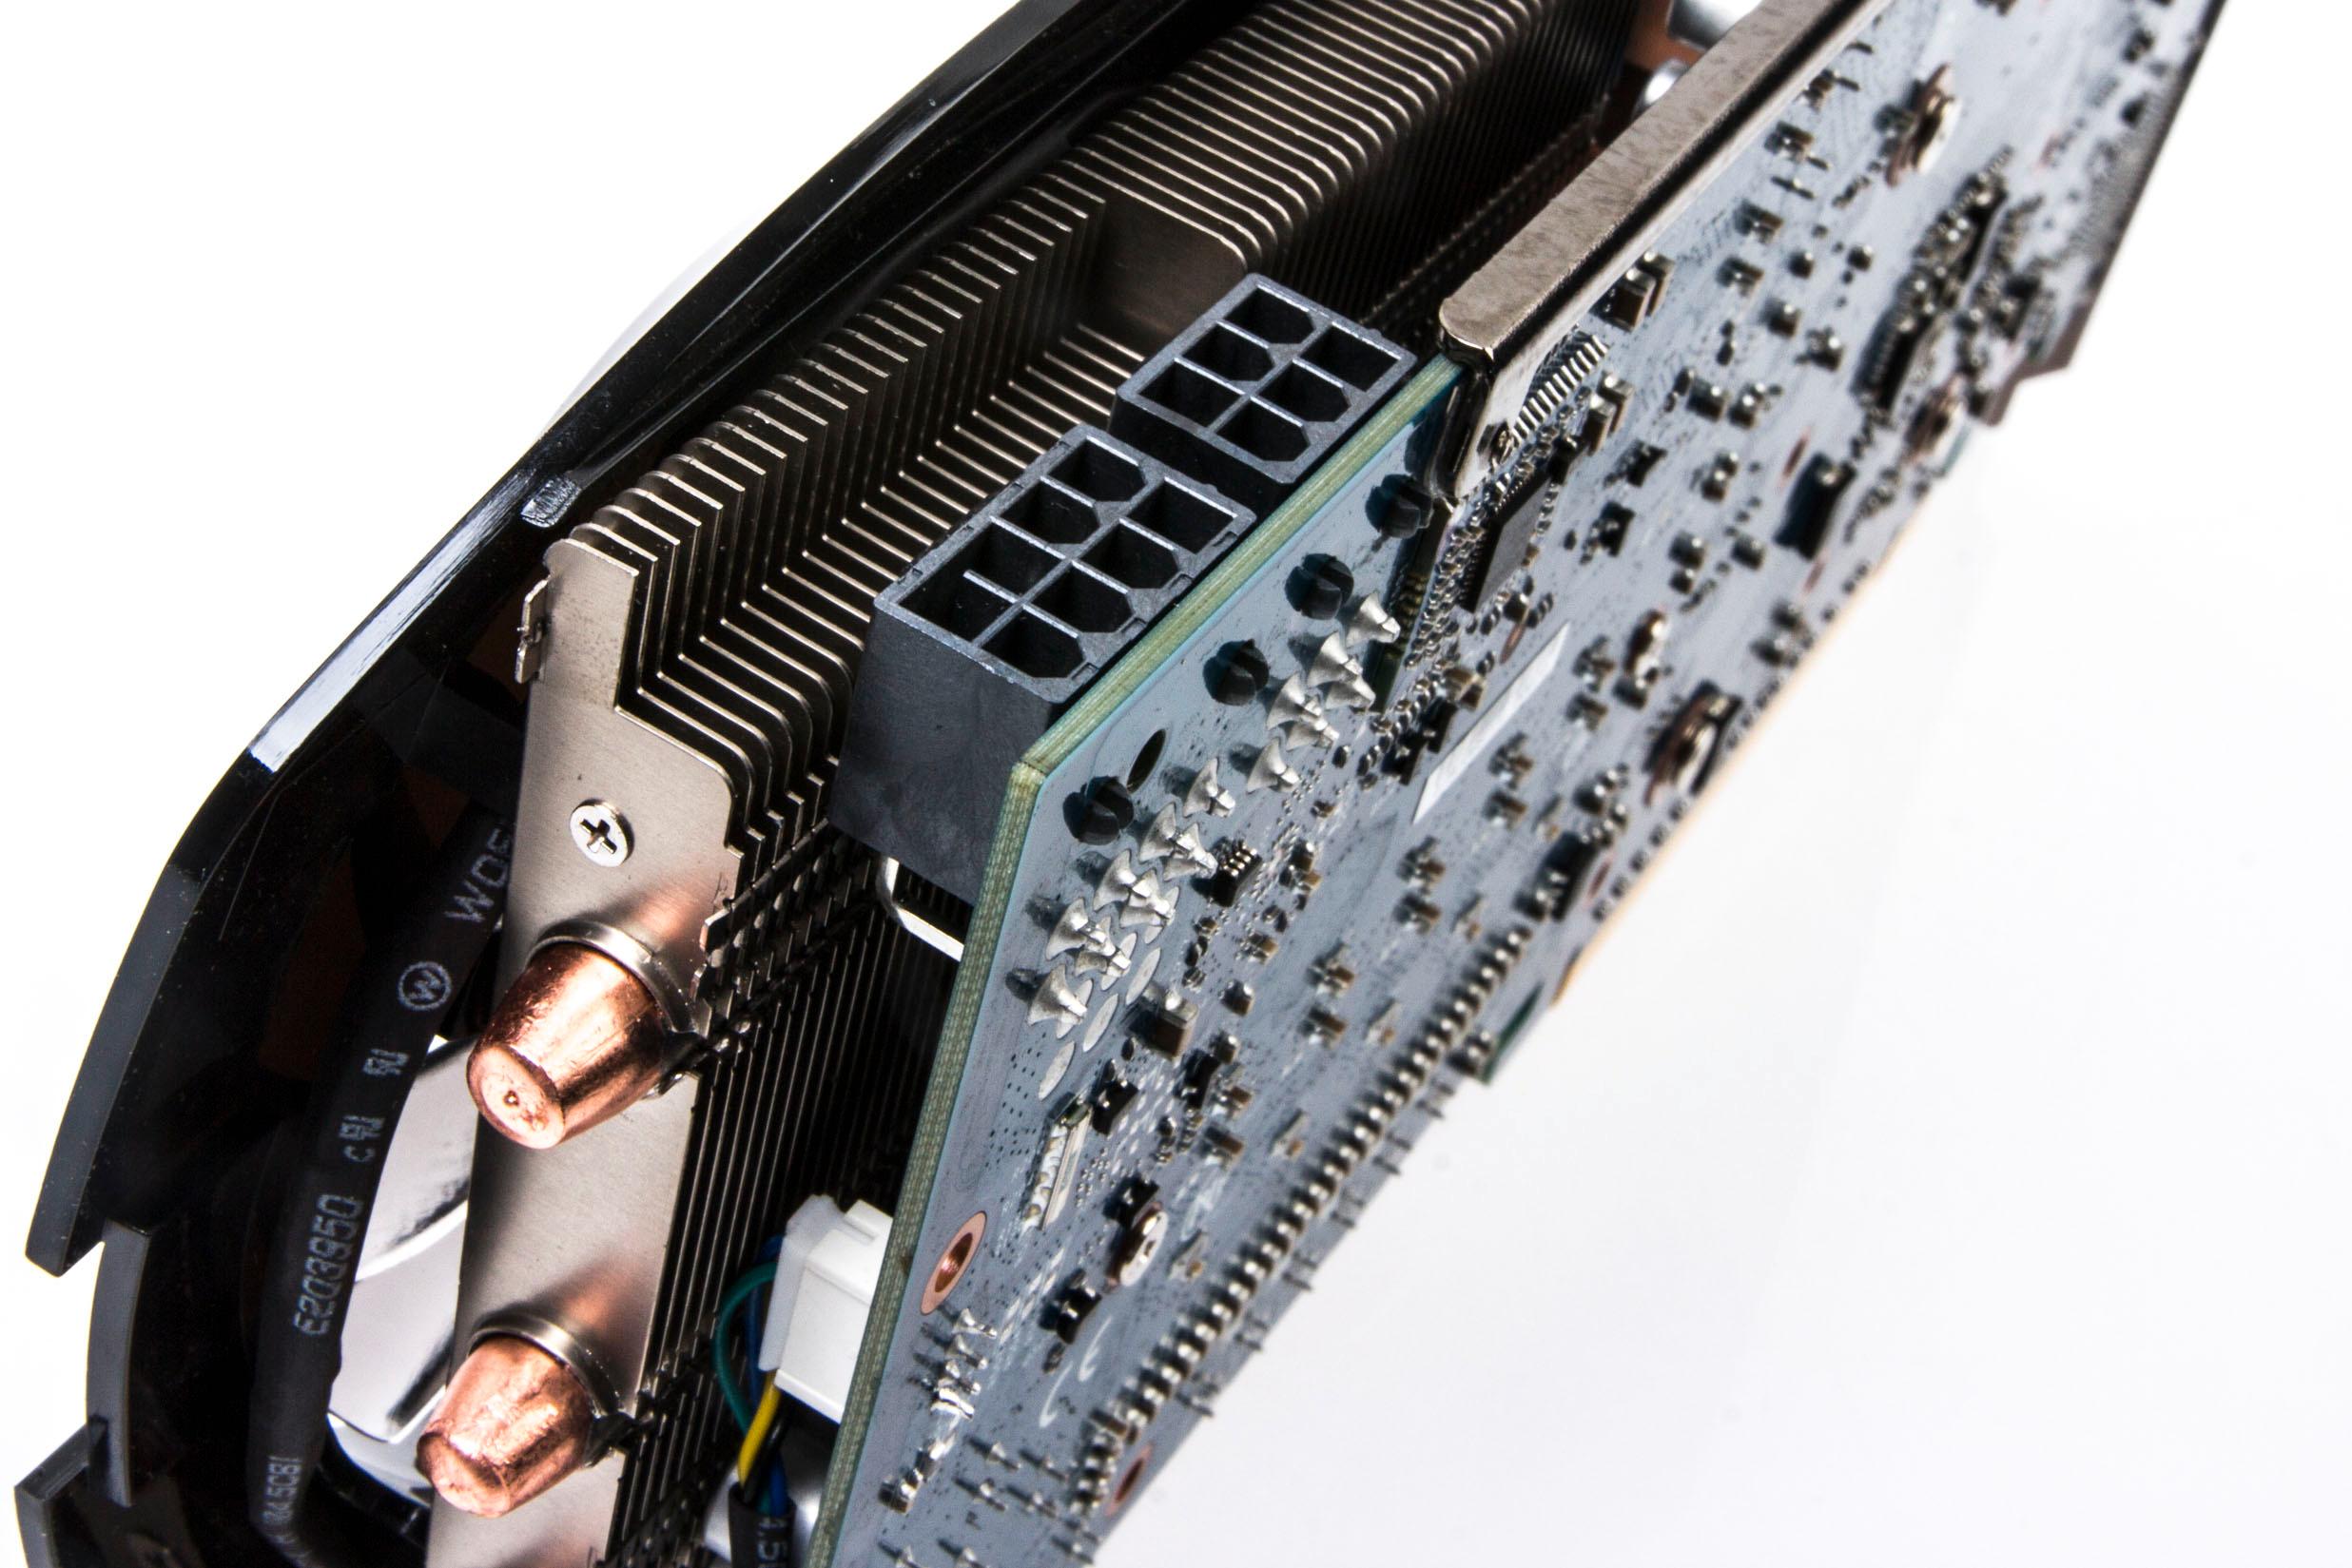 Gigabyte sin GeForce GTX 760 krever en 8-pins PCIe-plugg i tillegg til en 6-pins.Foto: Varg Aamo, Hardware.no